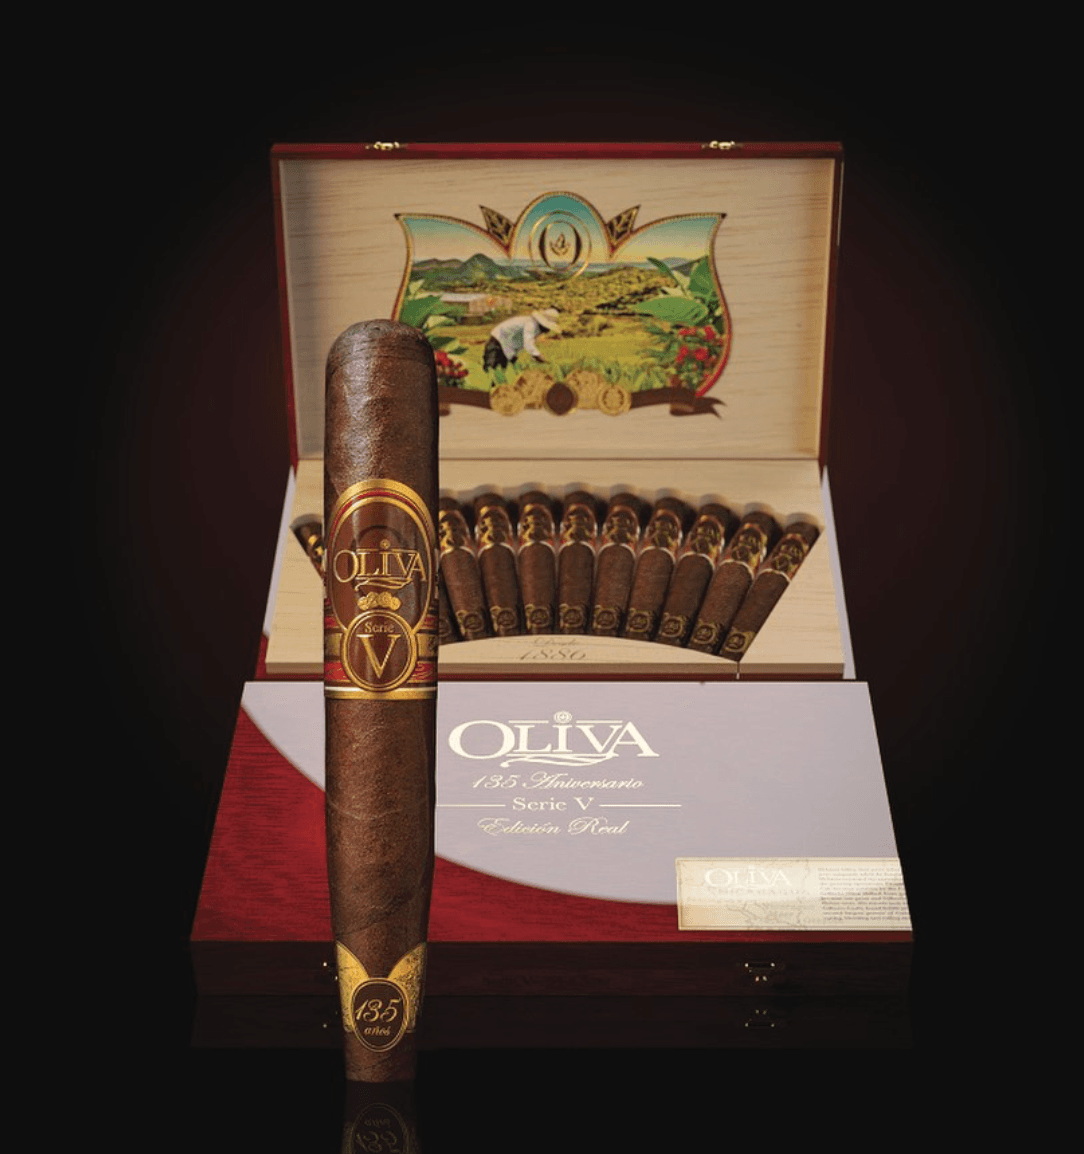 Oliva Serie V 135th Anniversary Perfecto (Box of 12)